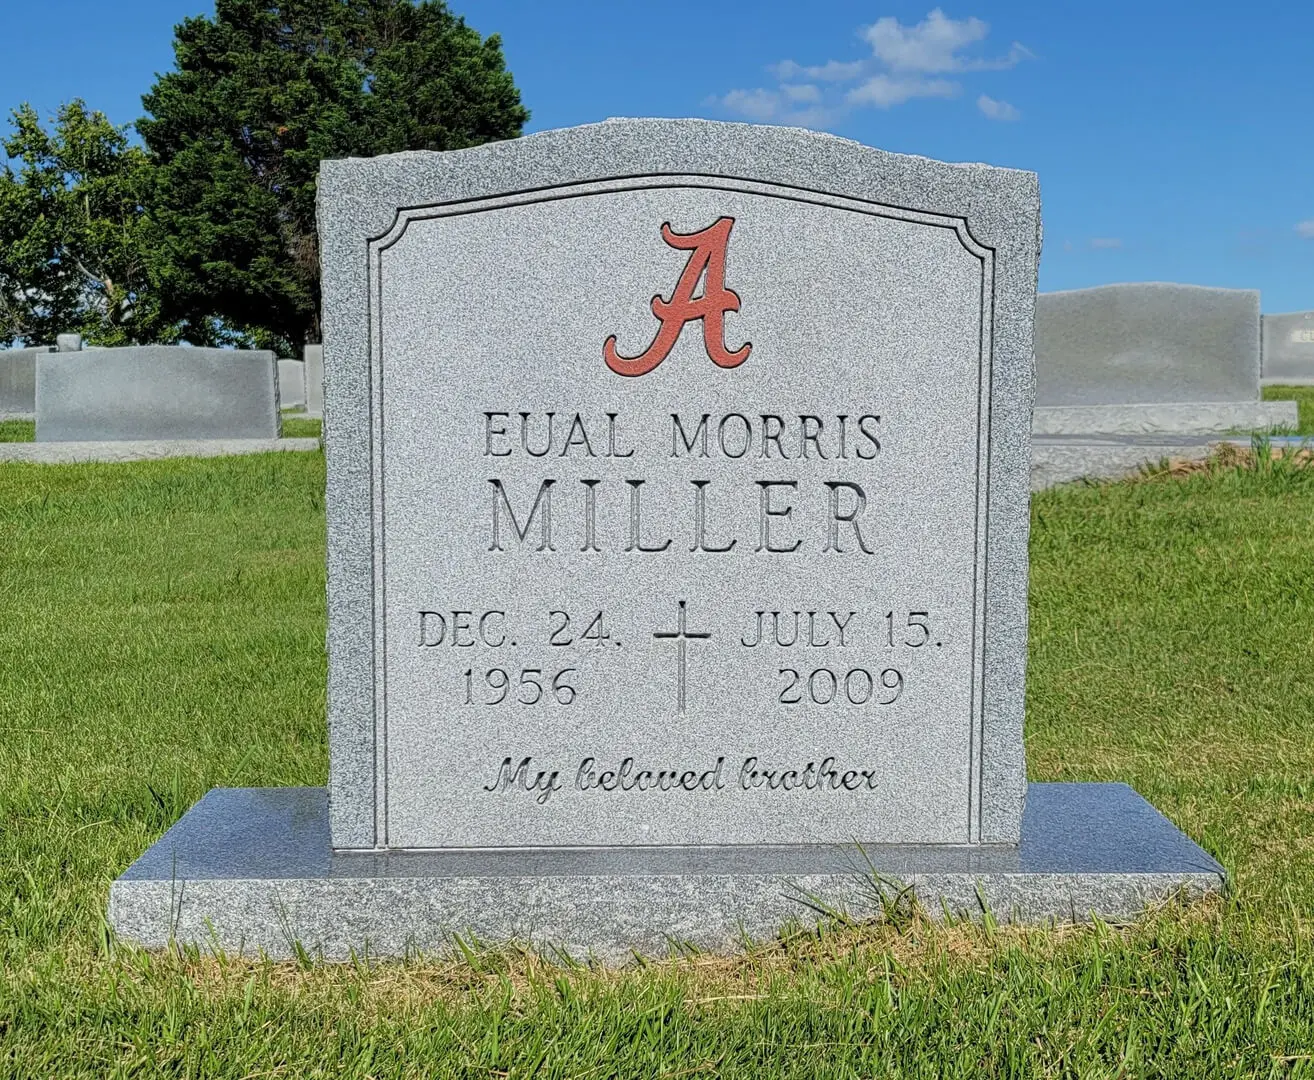 A memorial slab for Eual Morris Miller at the graveyard